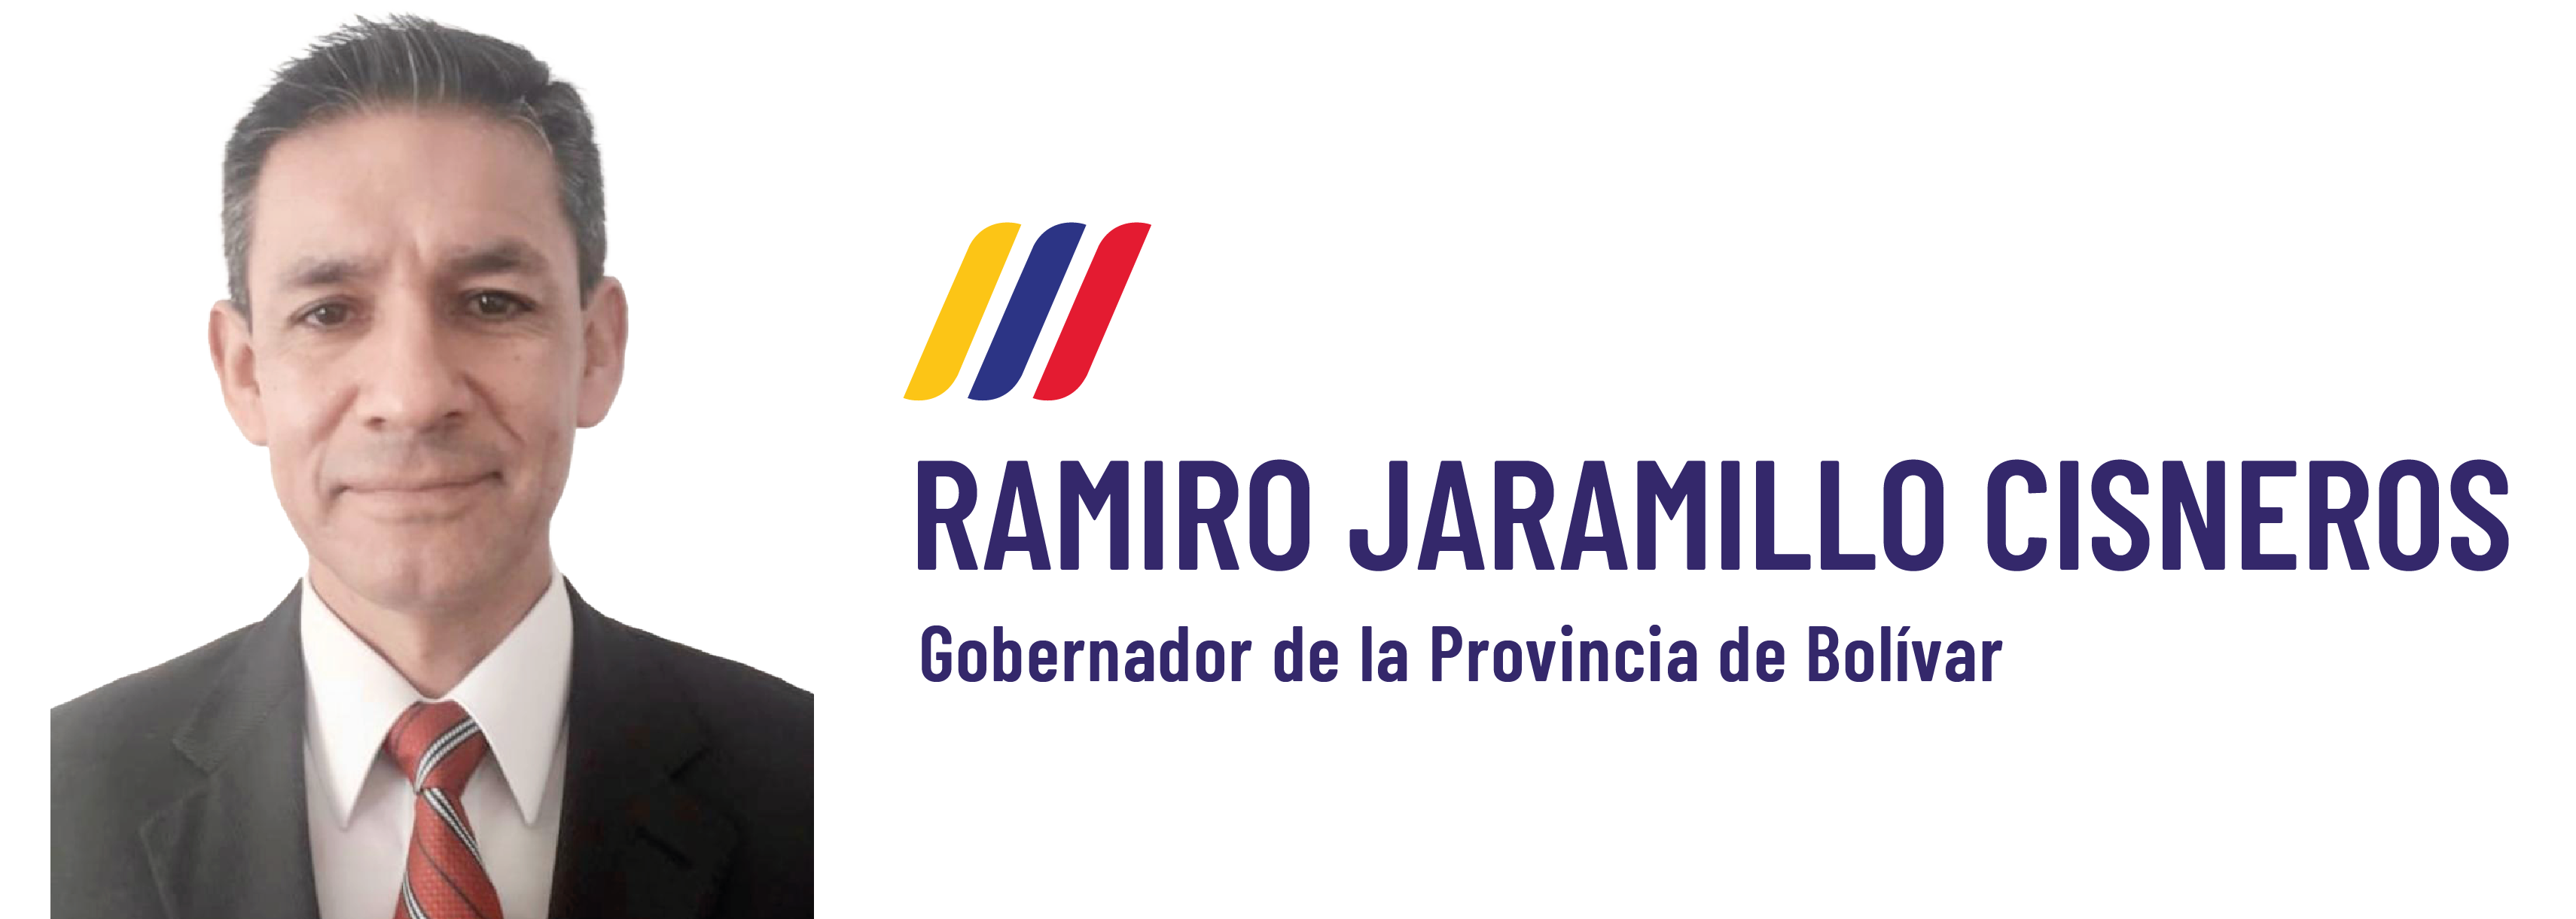 Ramiro Jaramillo Cisneros, Nuevo Gobernador de Bolívar